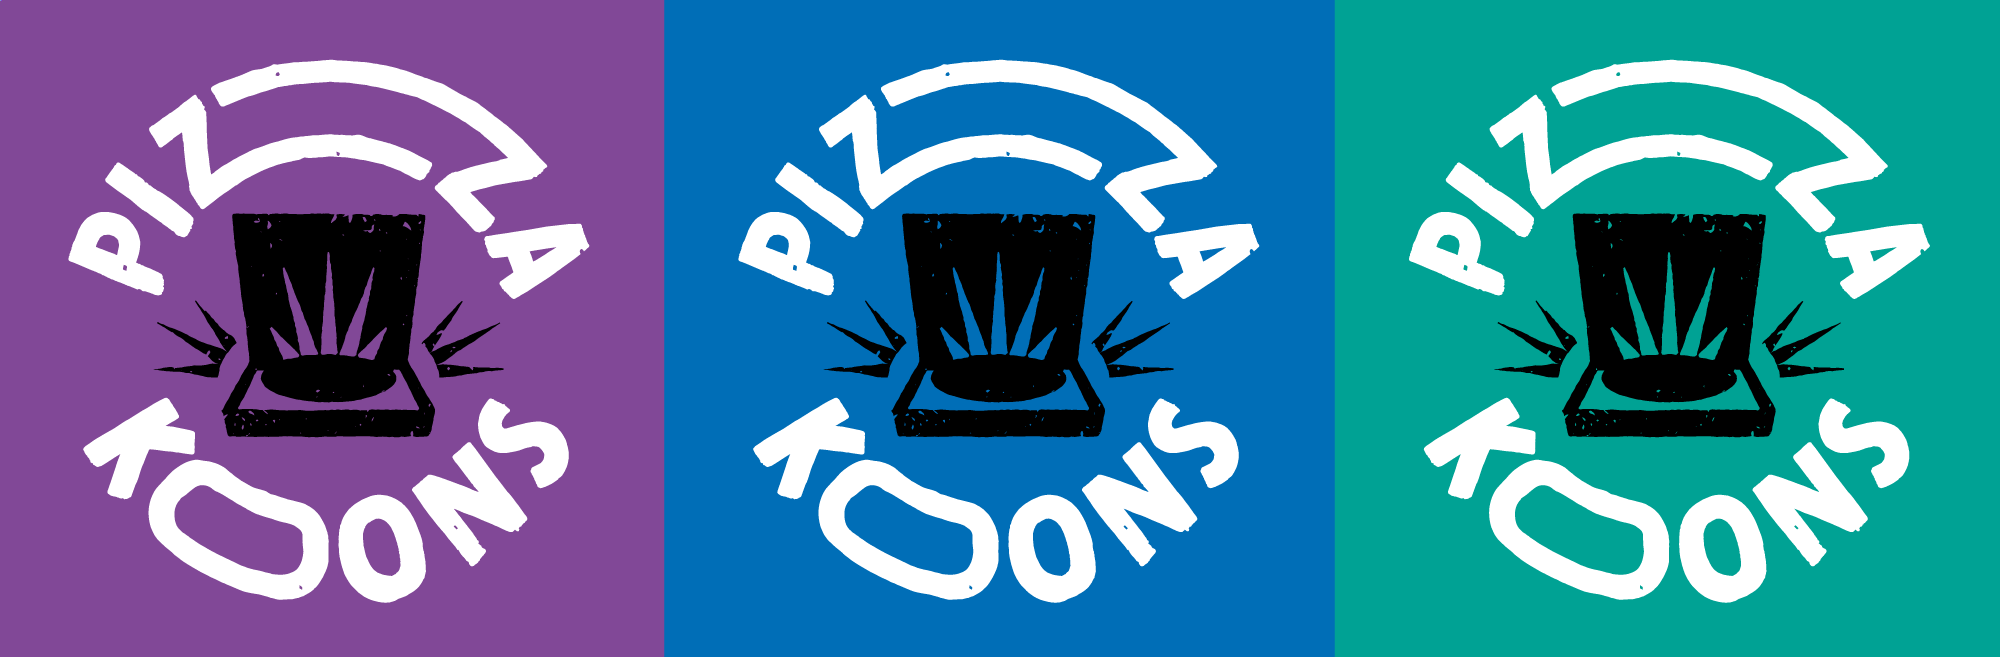 pizzakoons_logos_1